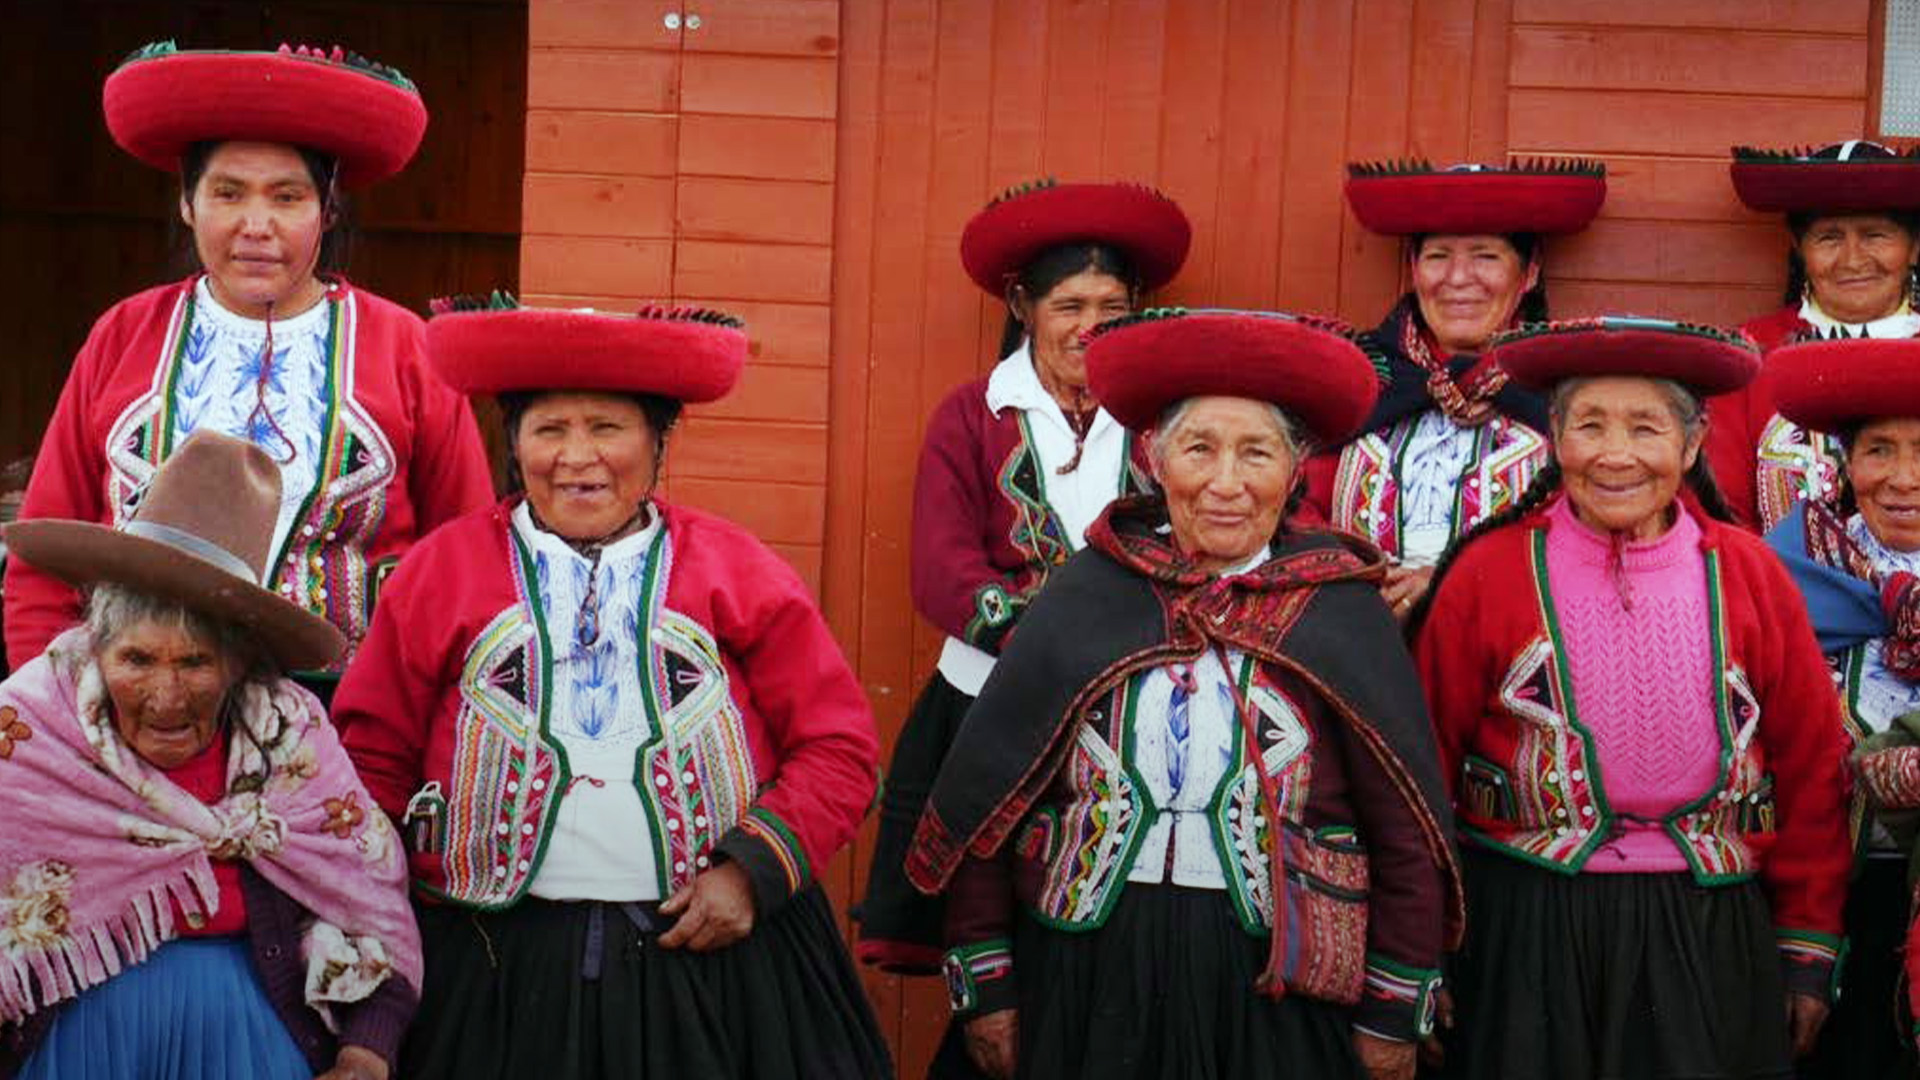 Peruvian widows after the meeting